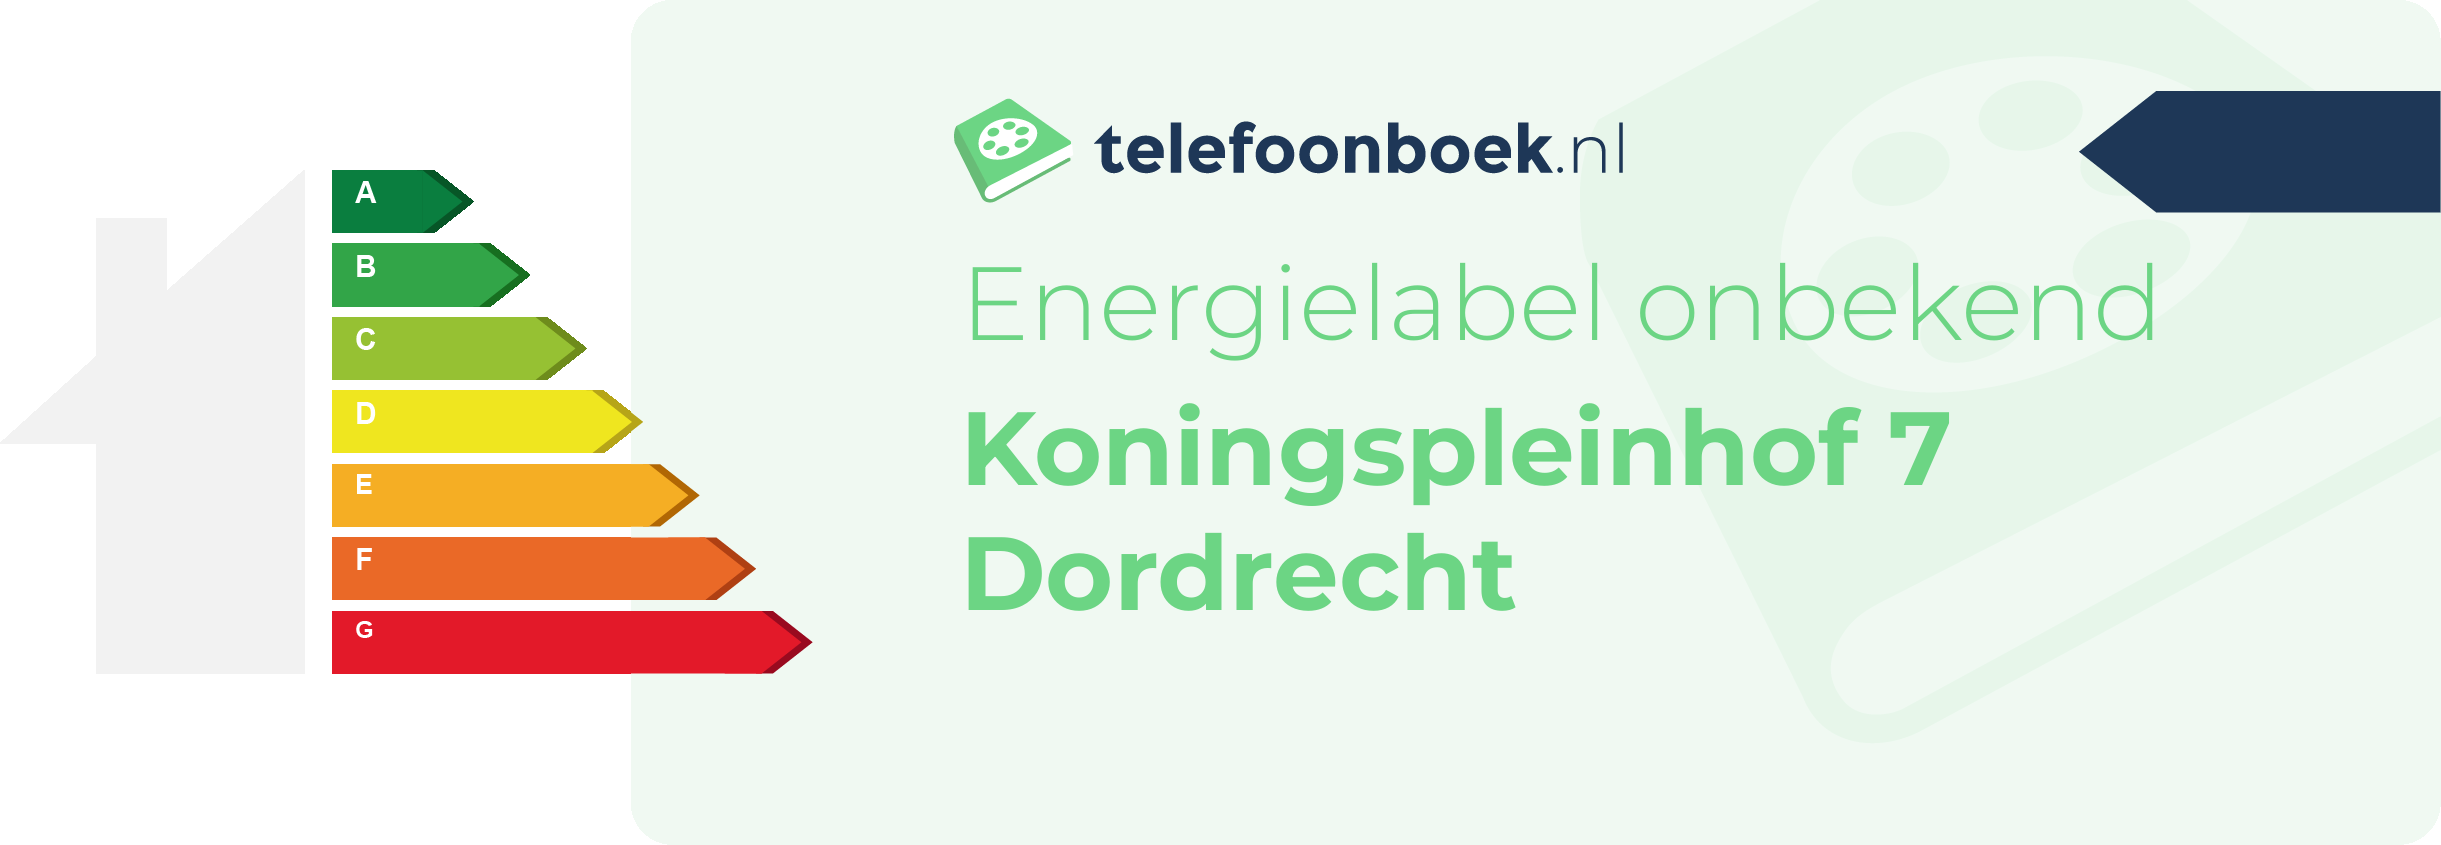 Energielabel Koningspleinhof 7 Dordrecht